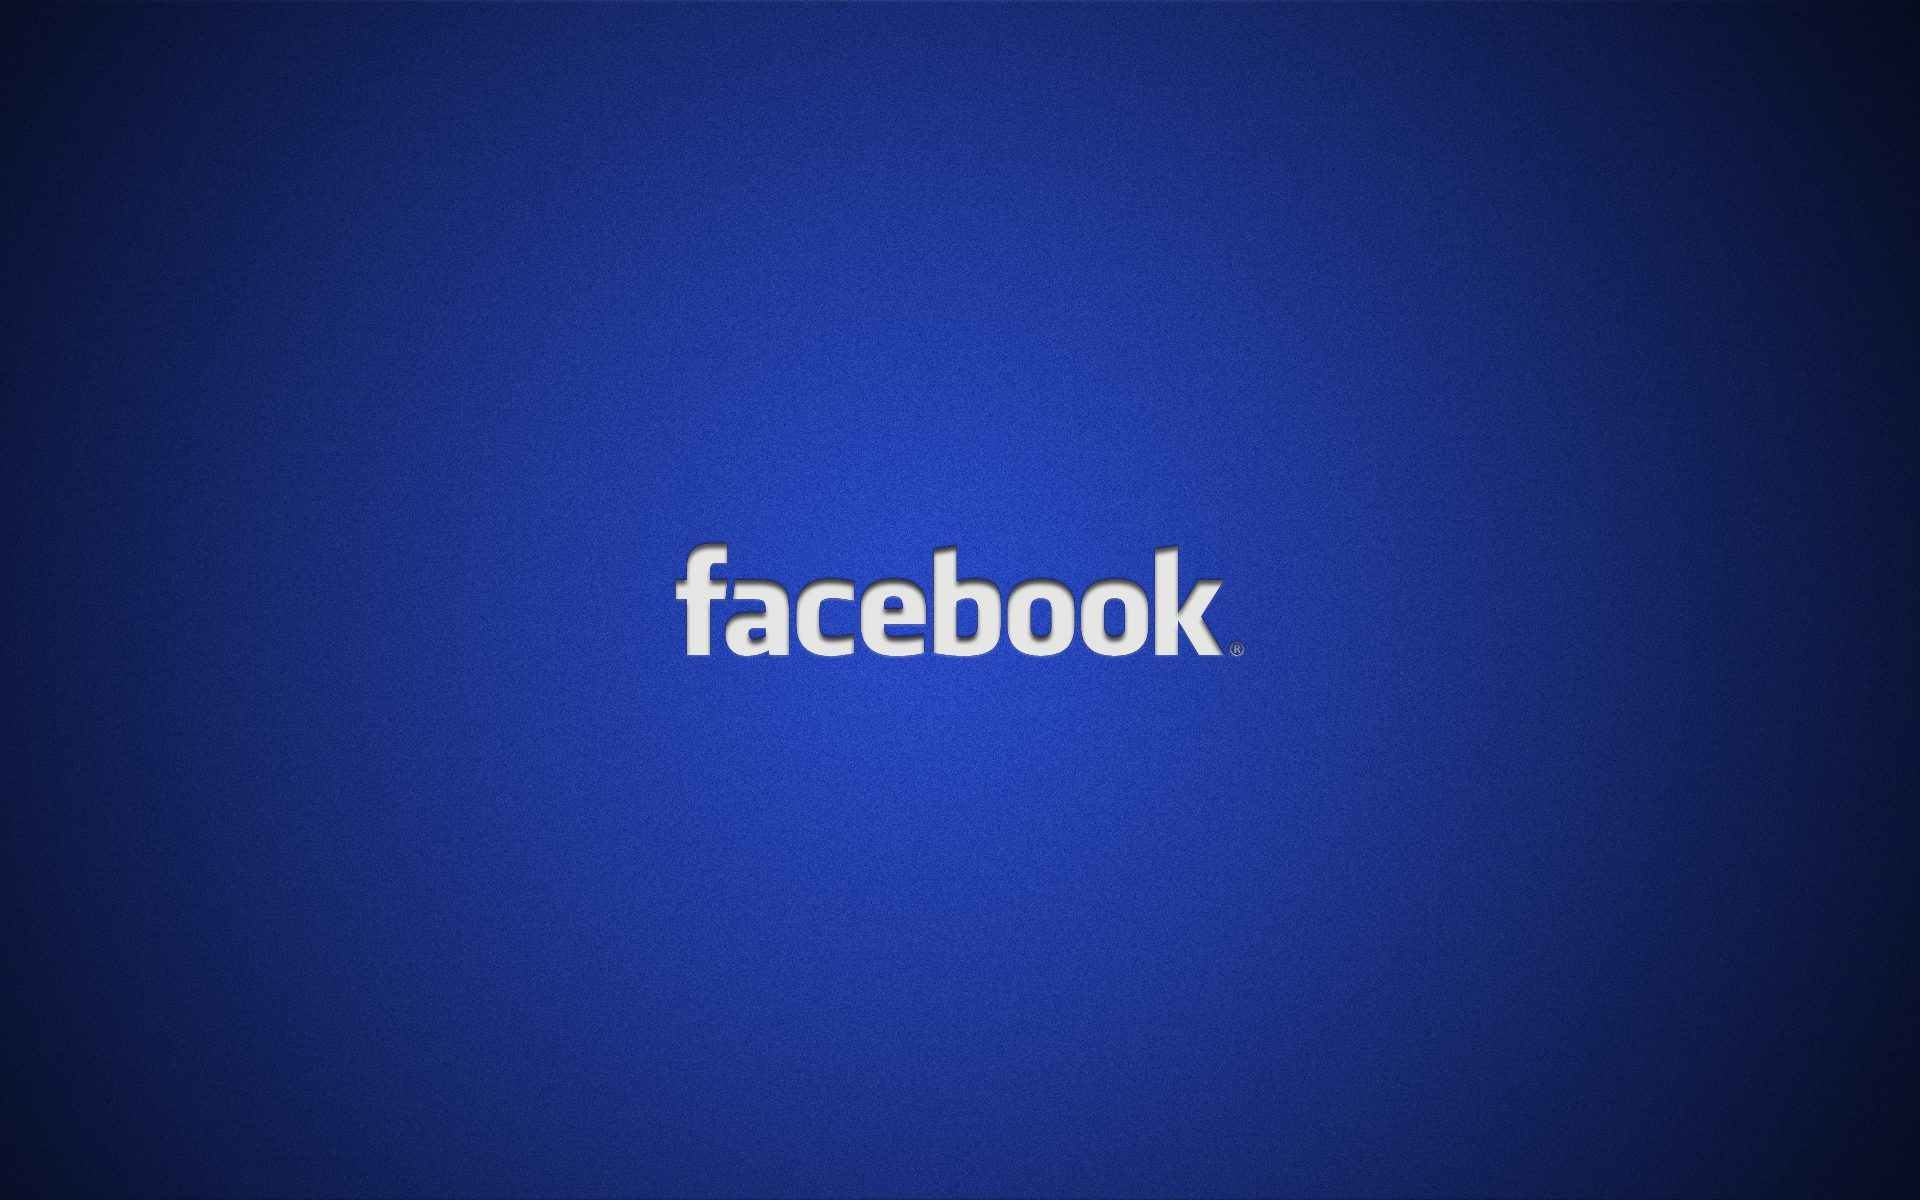 Картинки Facebook, социальная сеть, логотип, синий фото и обои на рабочий стол